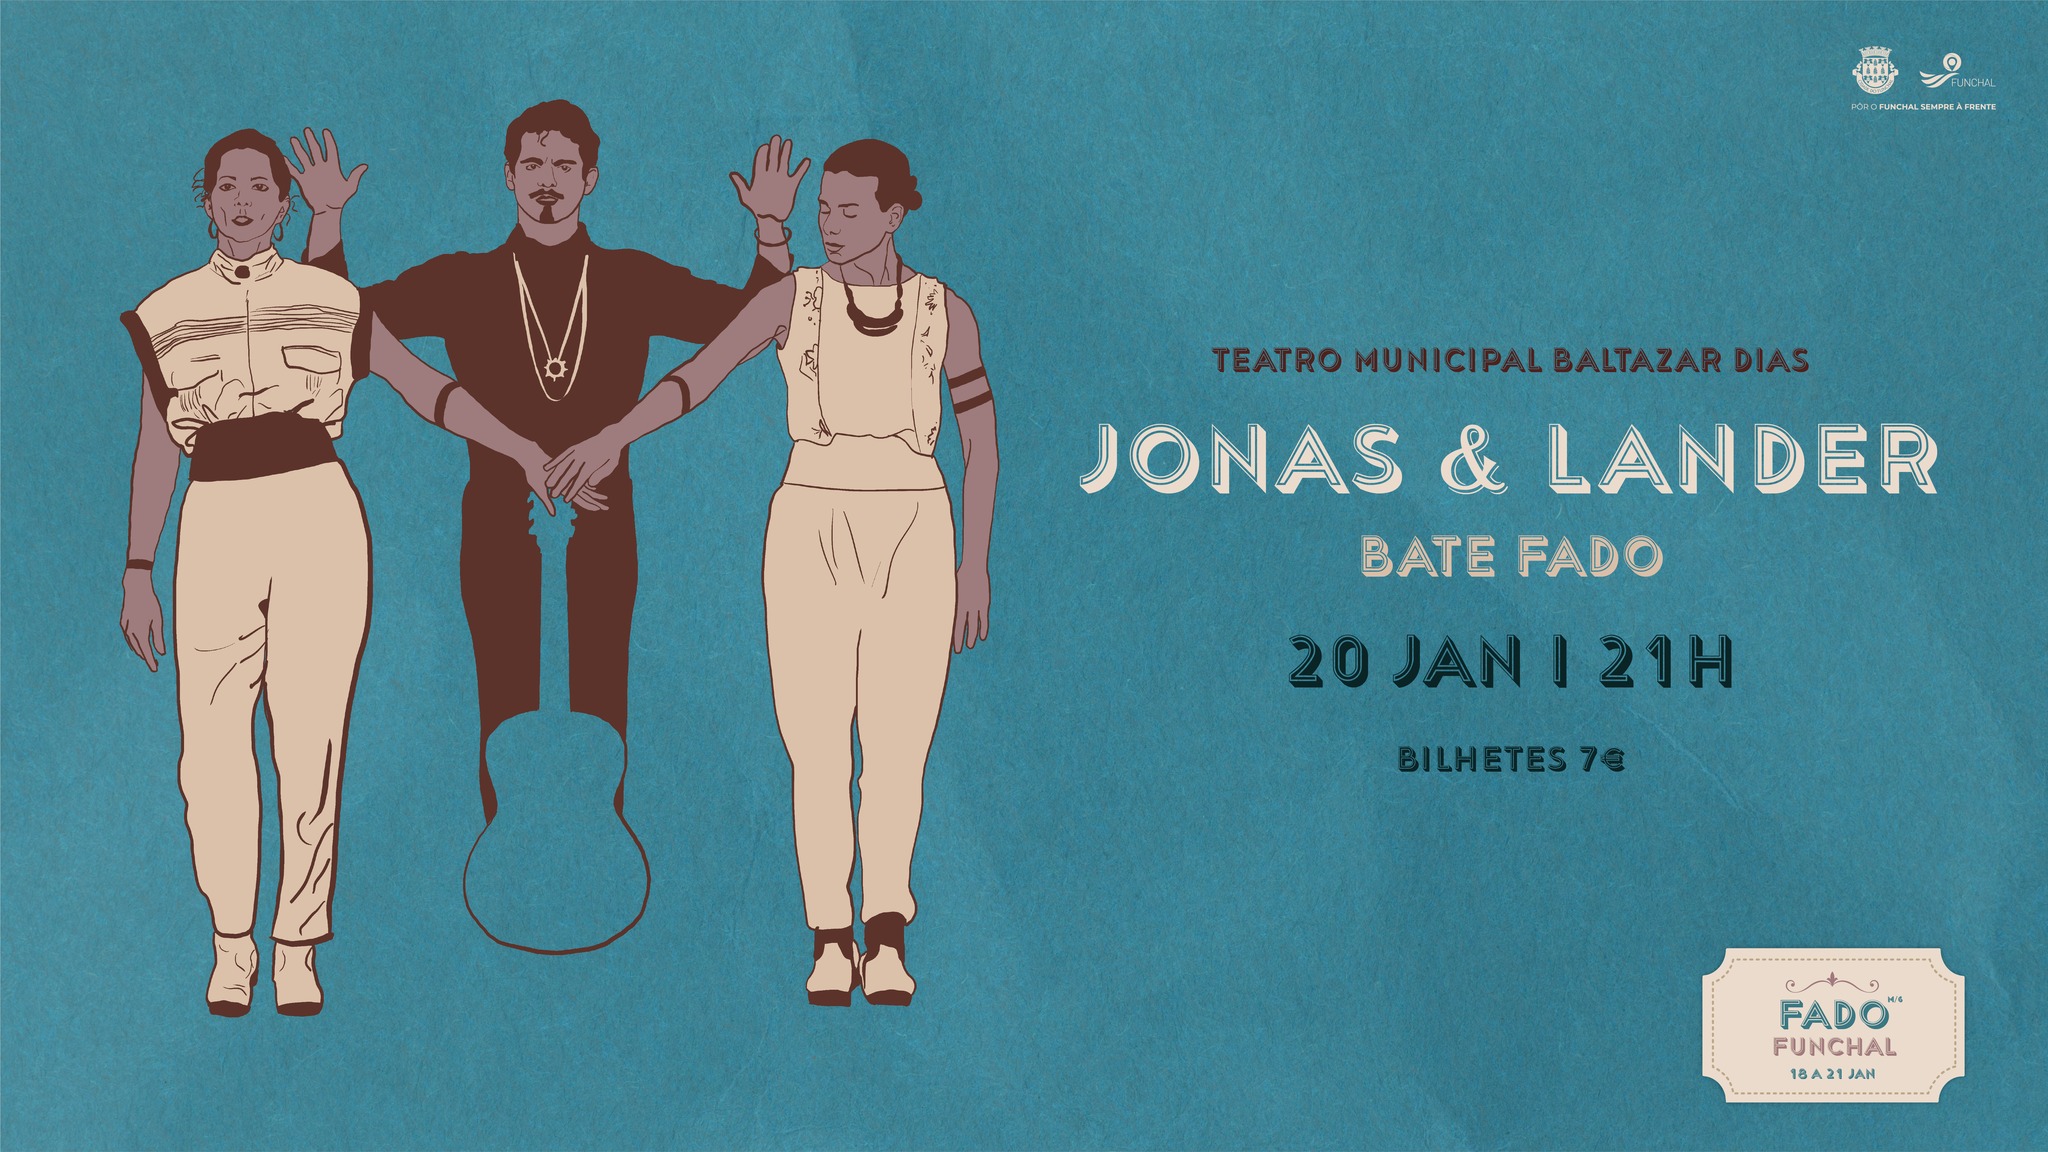 Fado Funchal - Bate Fado - Jonas & Lander